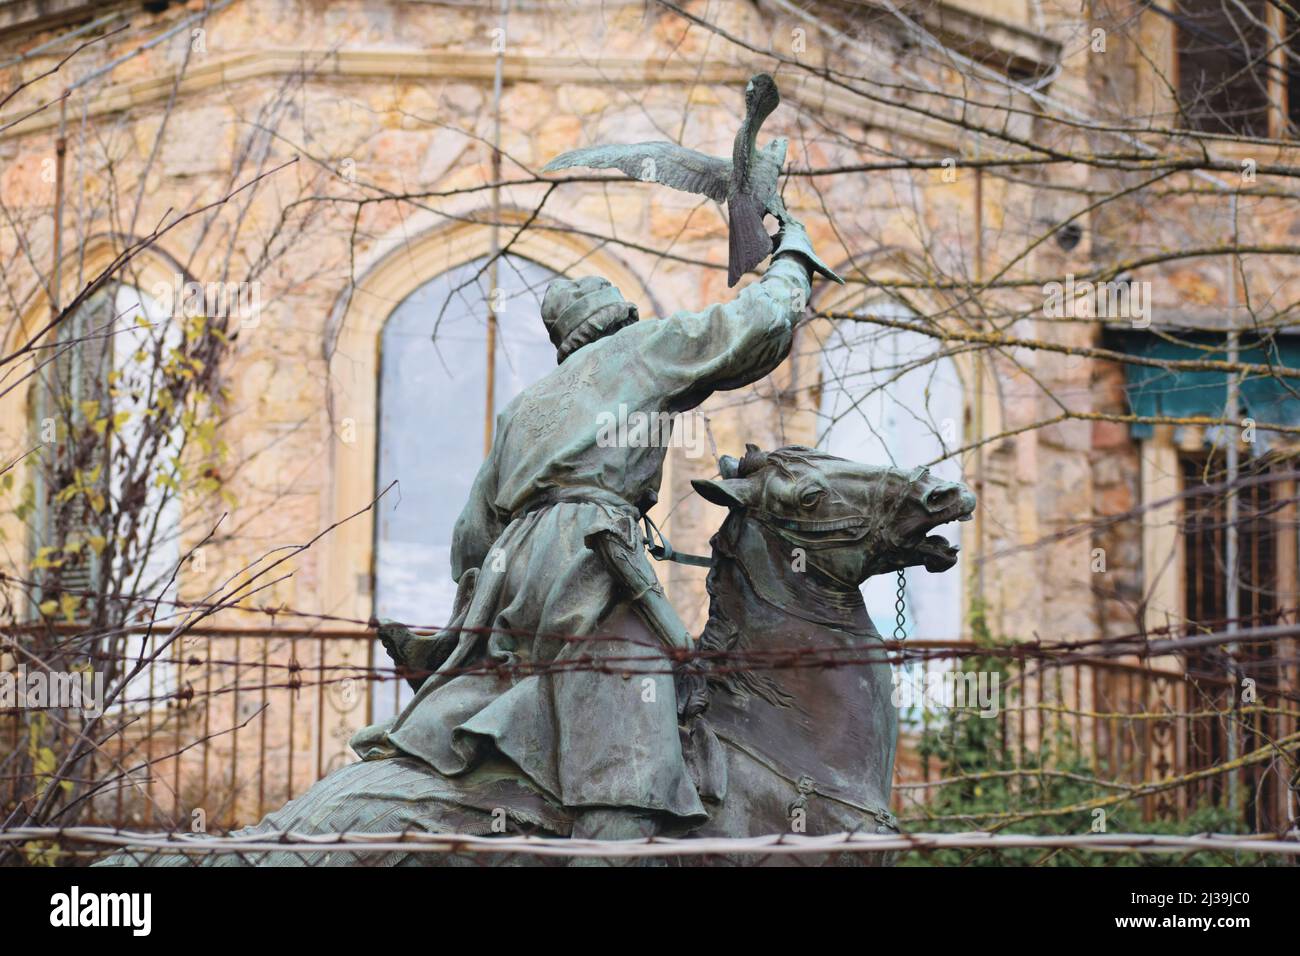 Détail d'une sculpture d'un chasseur à cheval au Palais d'été de l'ancienne famille royale grecque à Tatoi, Acharnes, Grèce Banque D'Images